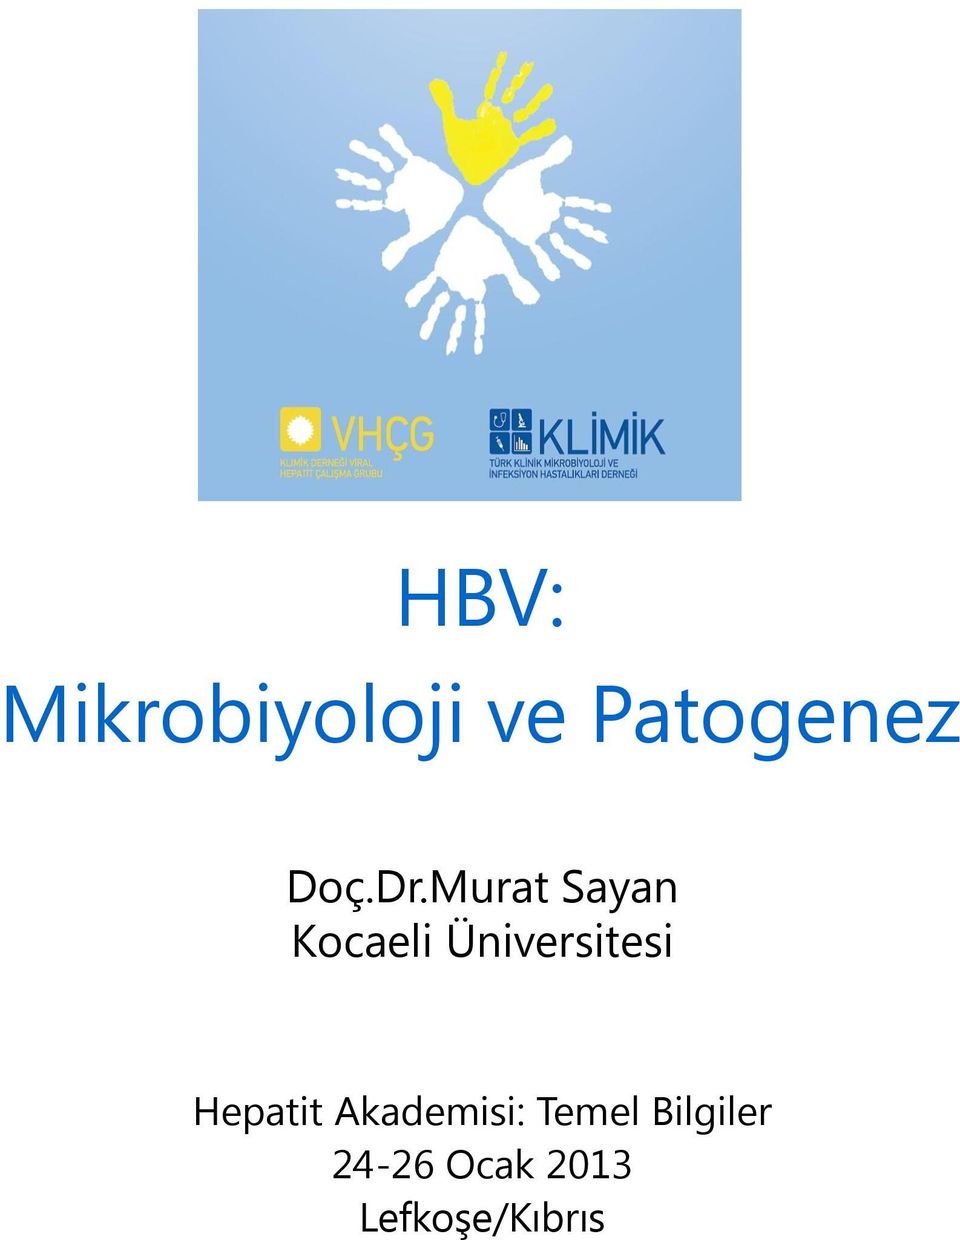 Murat Sayan Kocaeli Üniversitesi